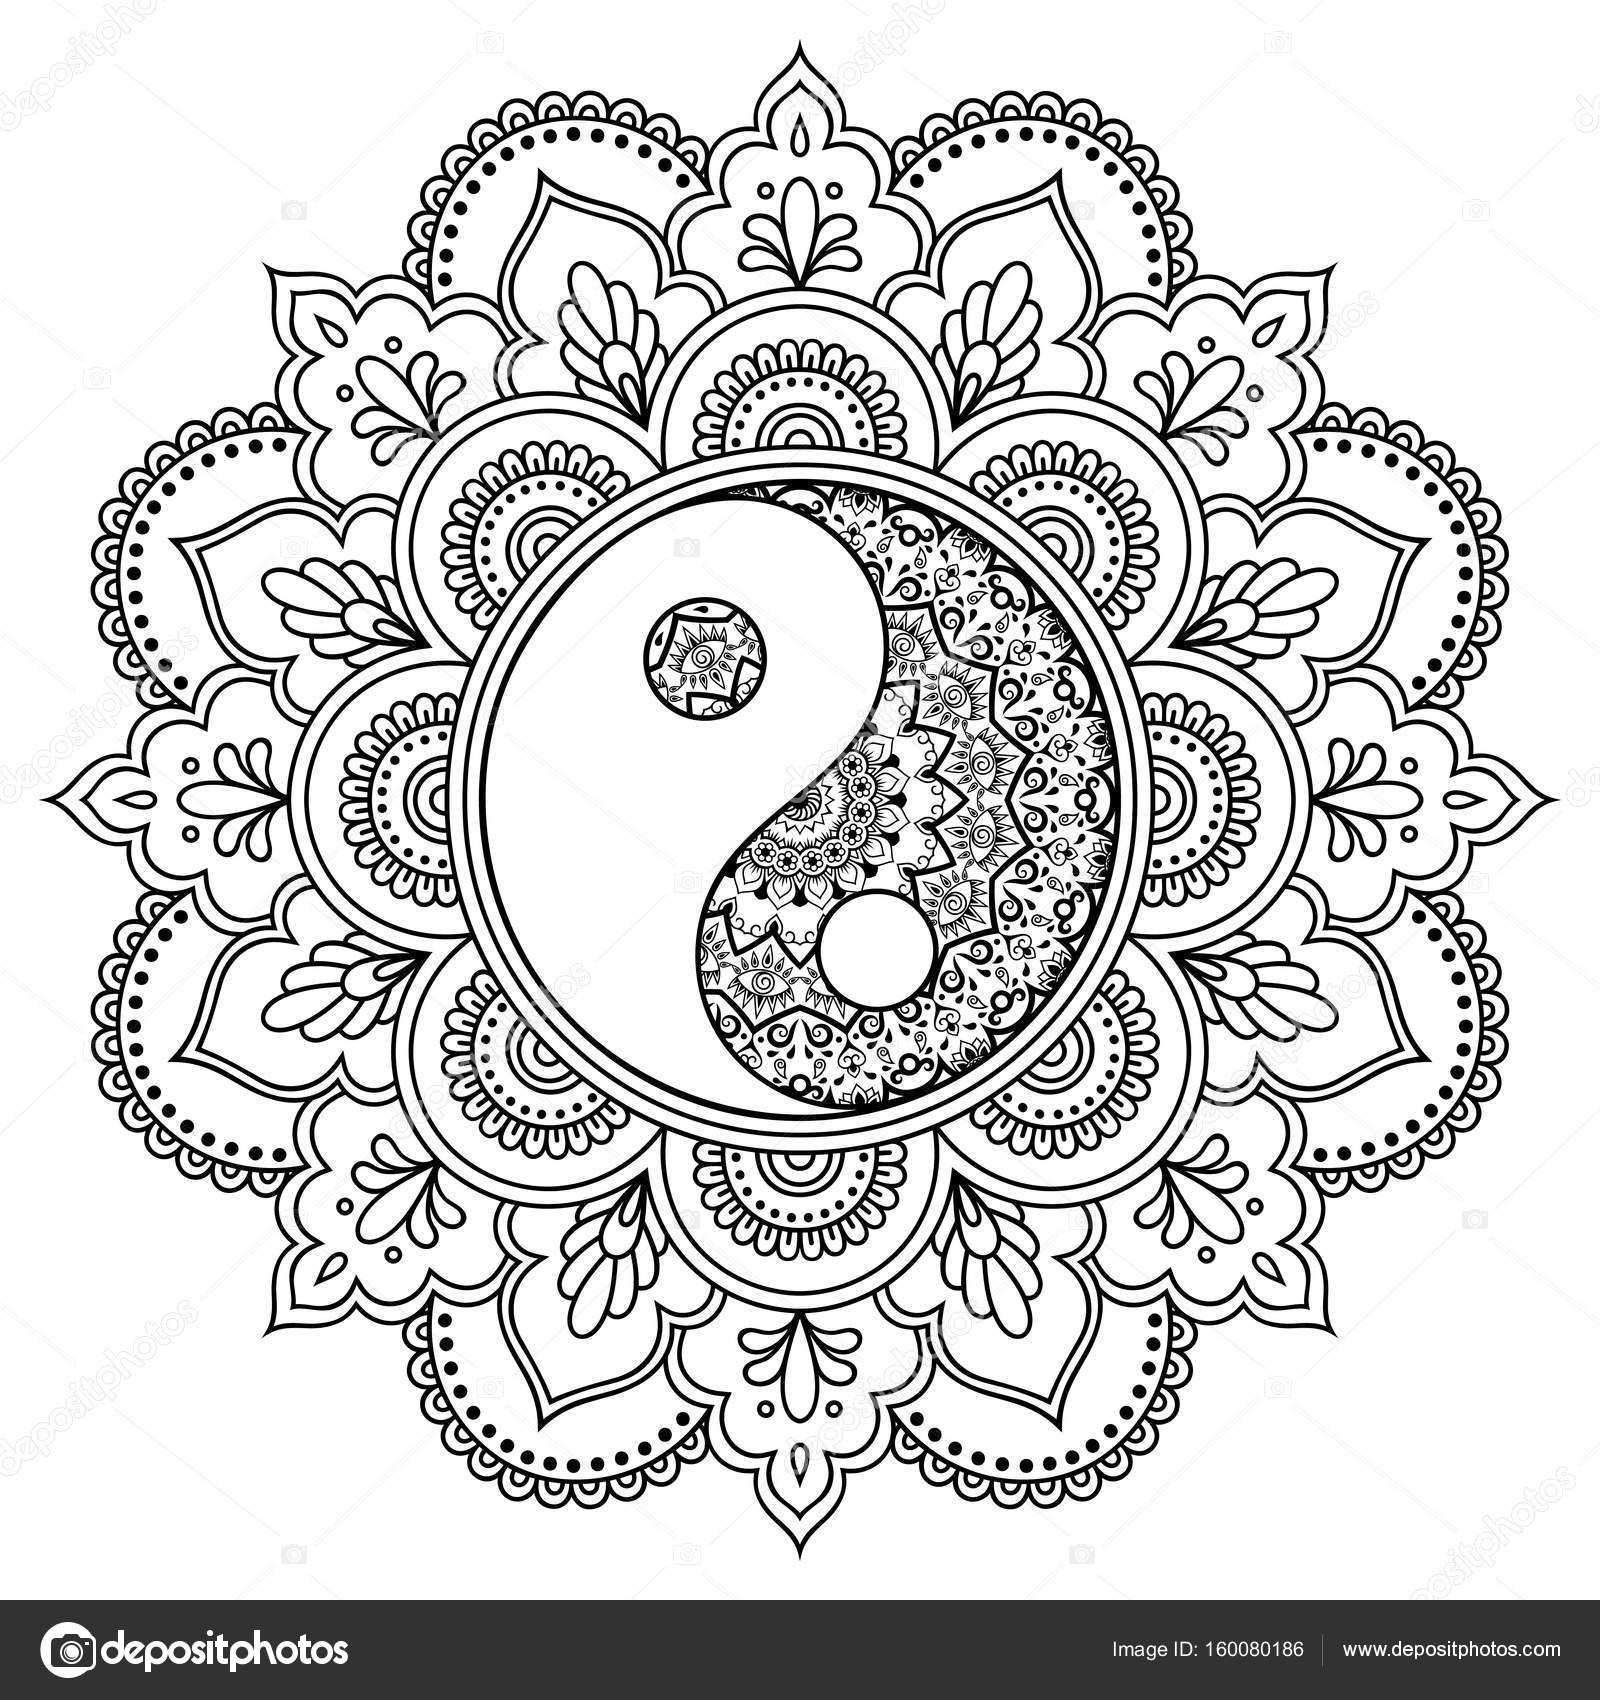 Herunterladen - Vektor Henna Tatoo Mandala. Dekorative Yin mit Orientalische Muster Ausmalen